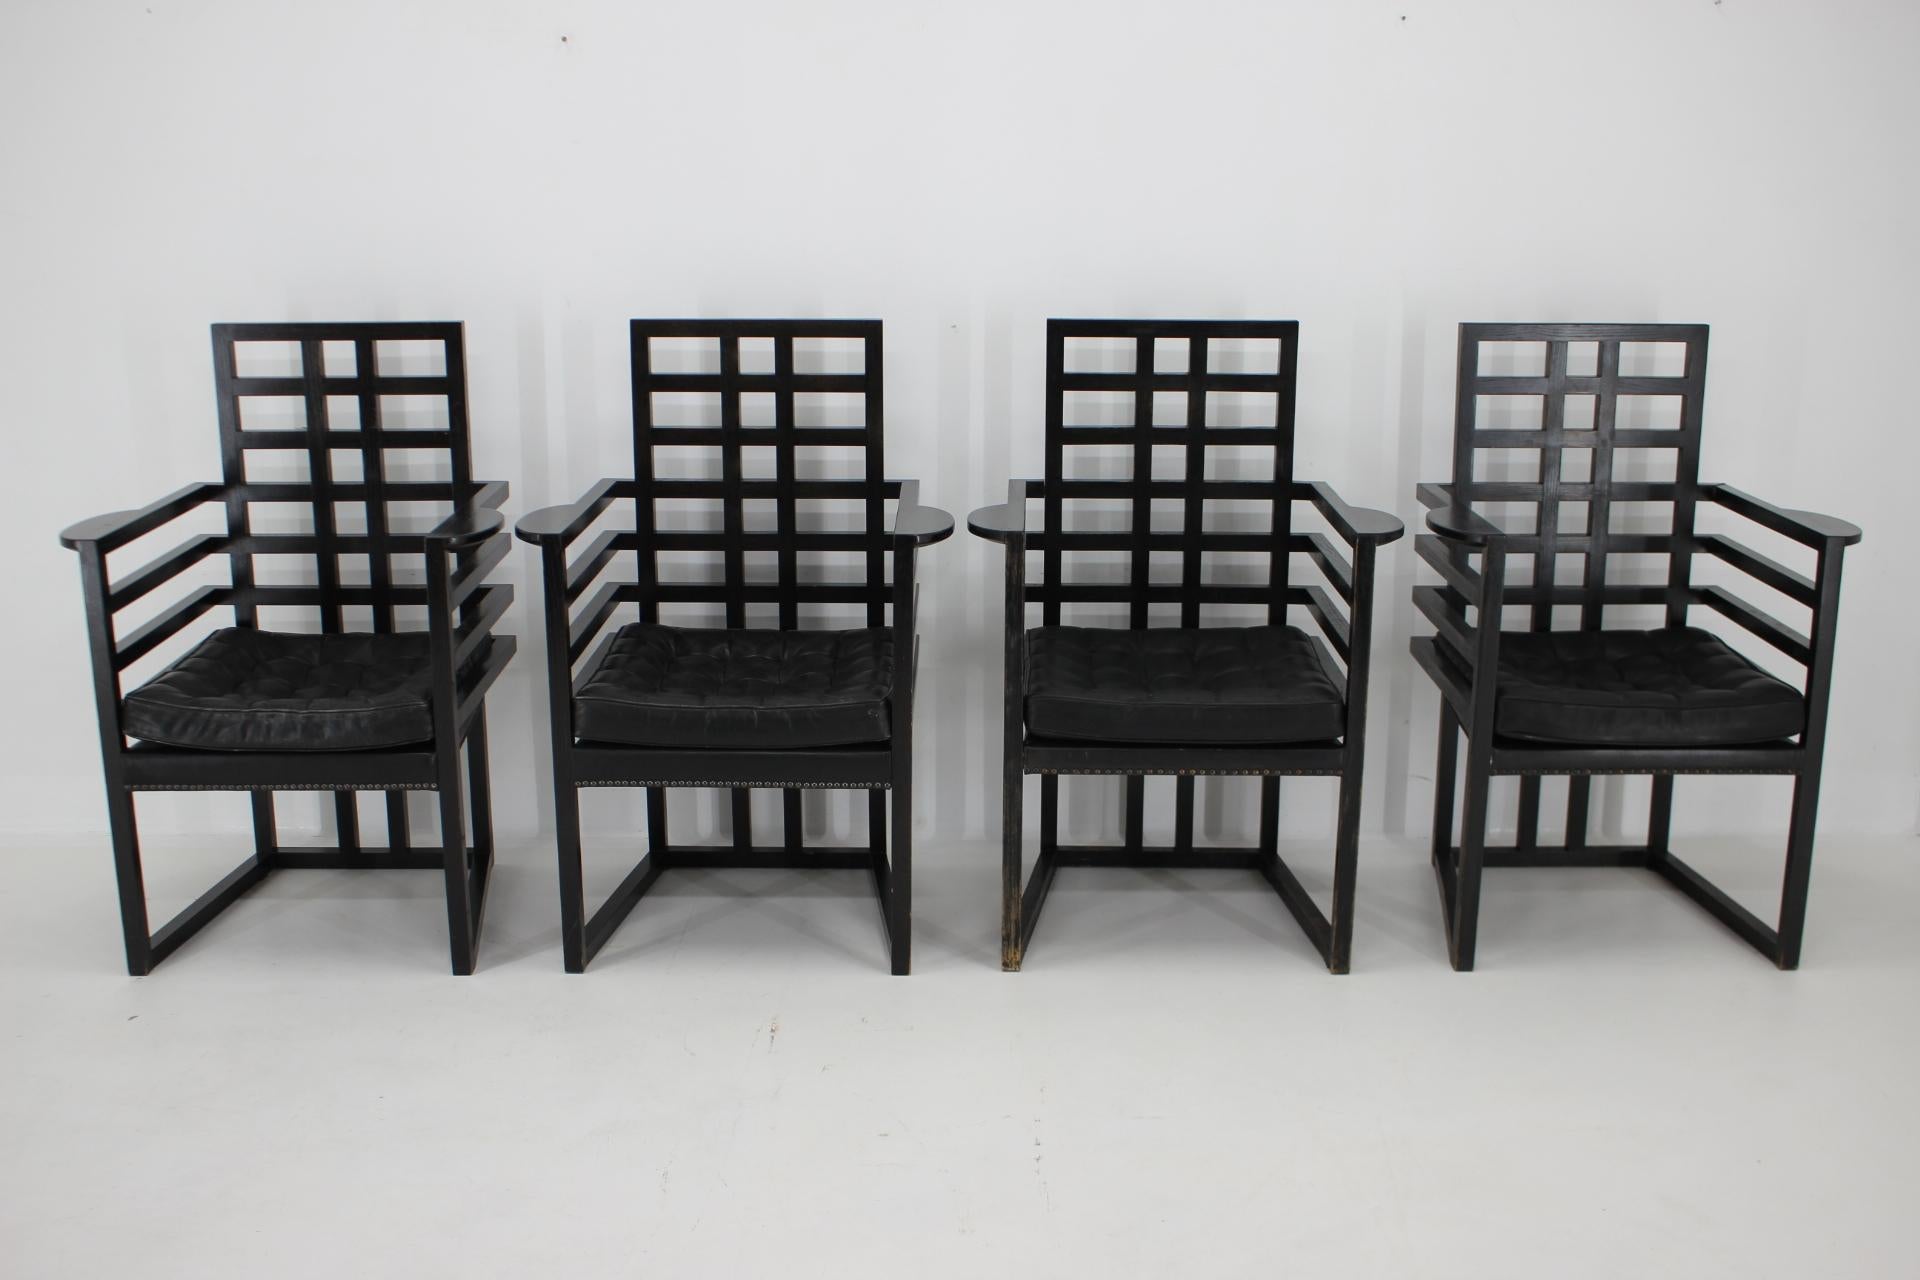 - Stühle, entworfen von Josef Hoffmann und hergestellt von Wittmann (Österreich)
- Ursprünglich 1908 entworfen, stammen diese Beispiele aus der zweiten Hälfte des zwanzigsten Jahrhunderts. 
- Ebonisierte Eschenholzrahmen mit Knopf
- getuftete